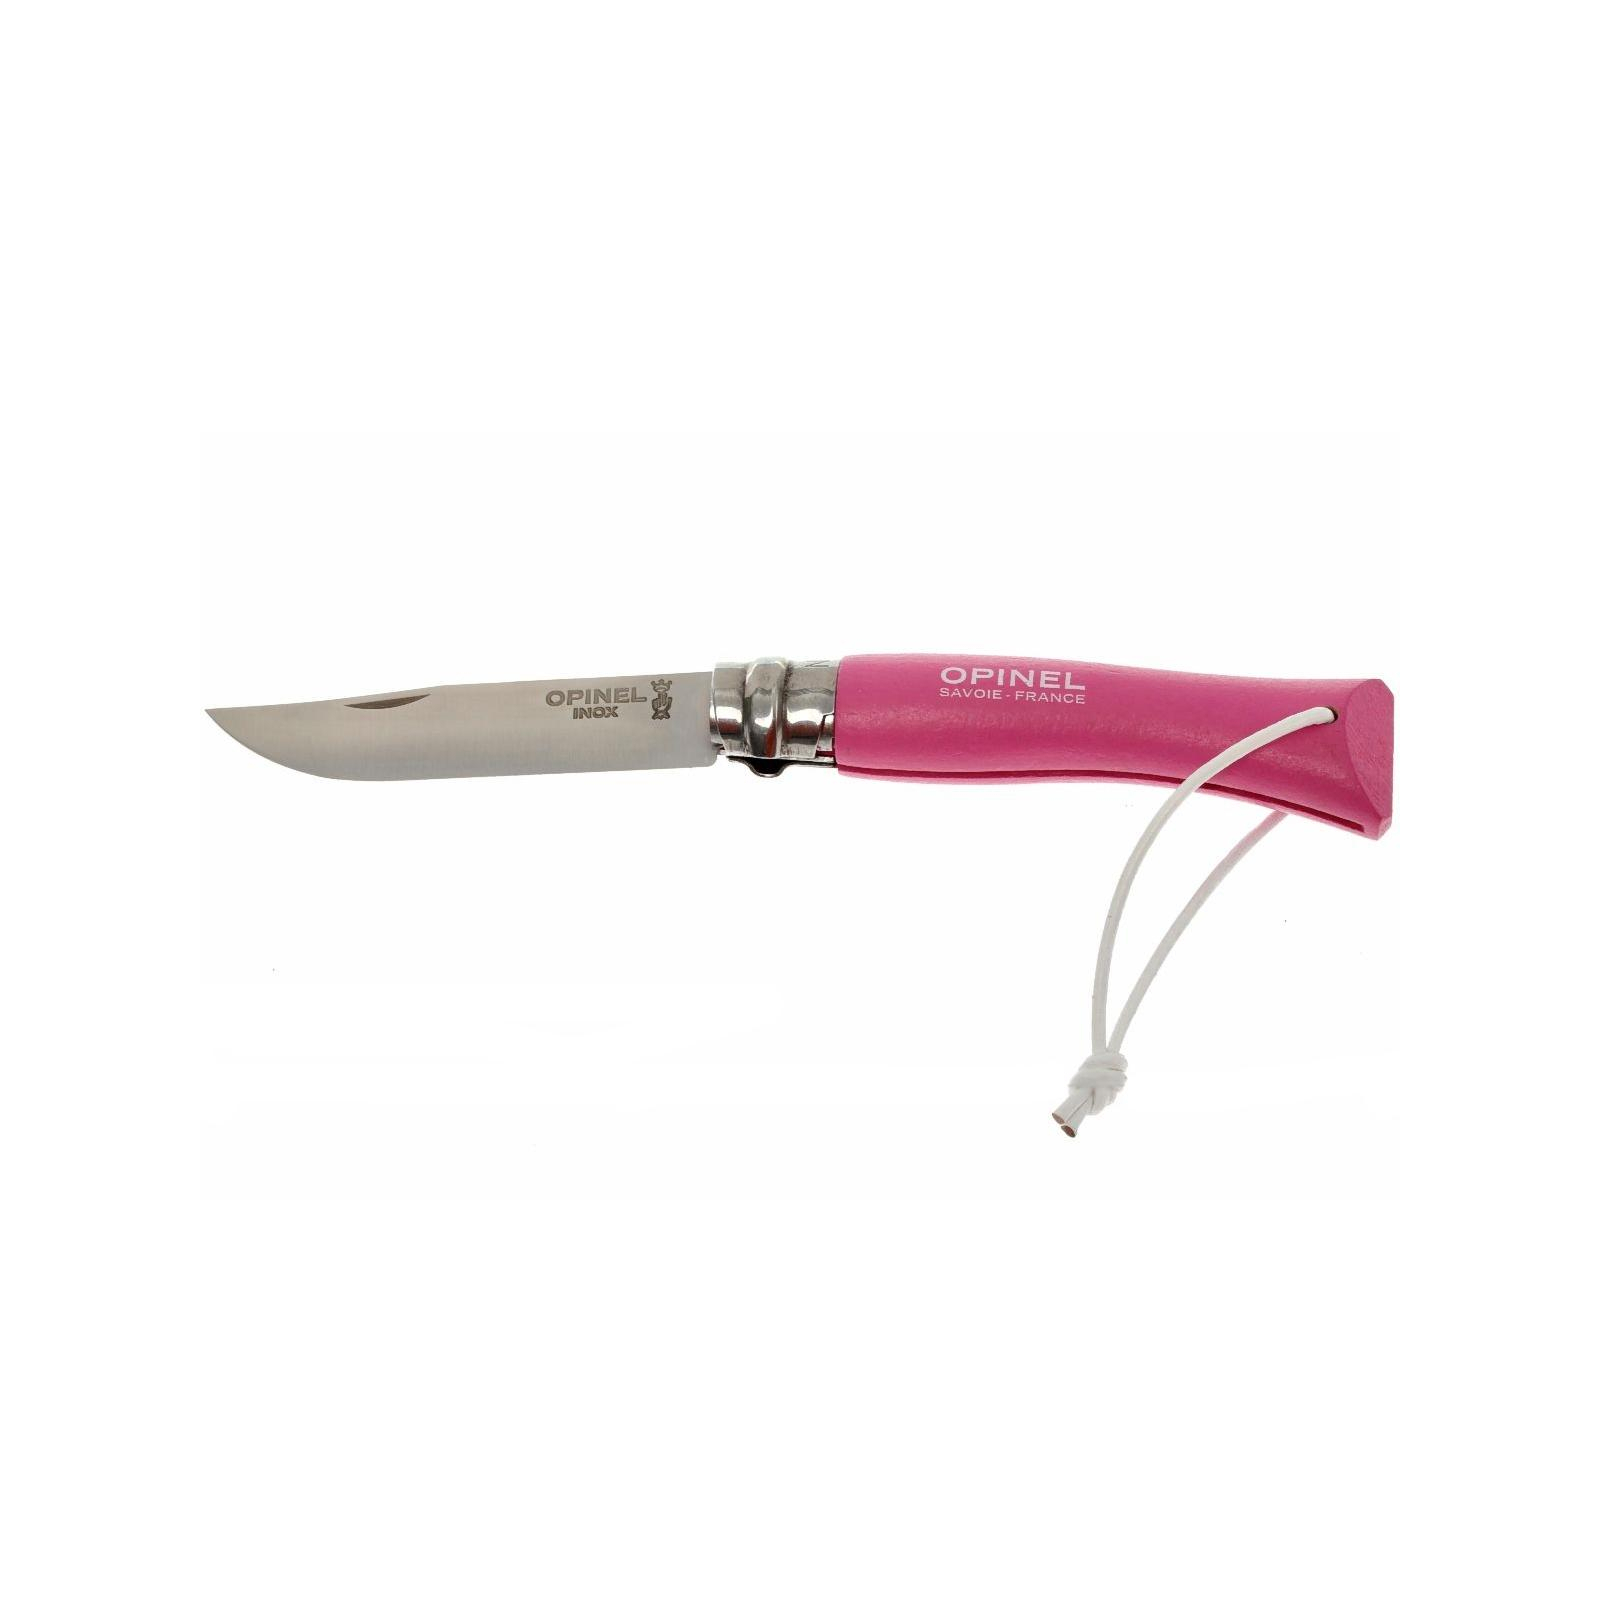 Нож Opinel №7 Inox VRI Trekking pink (001791)